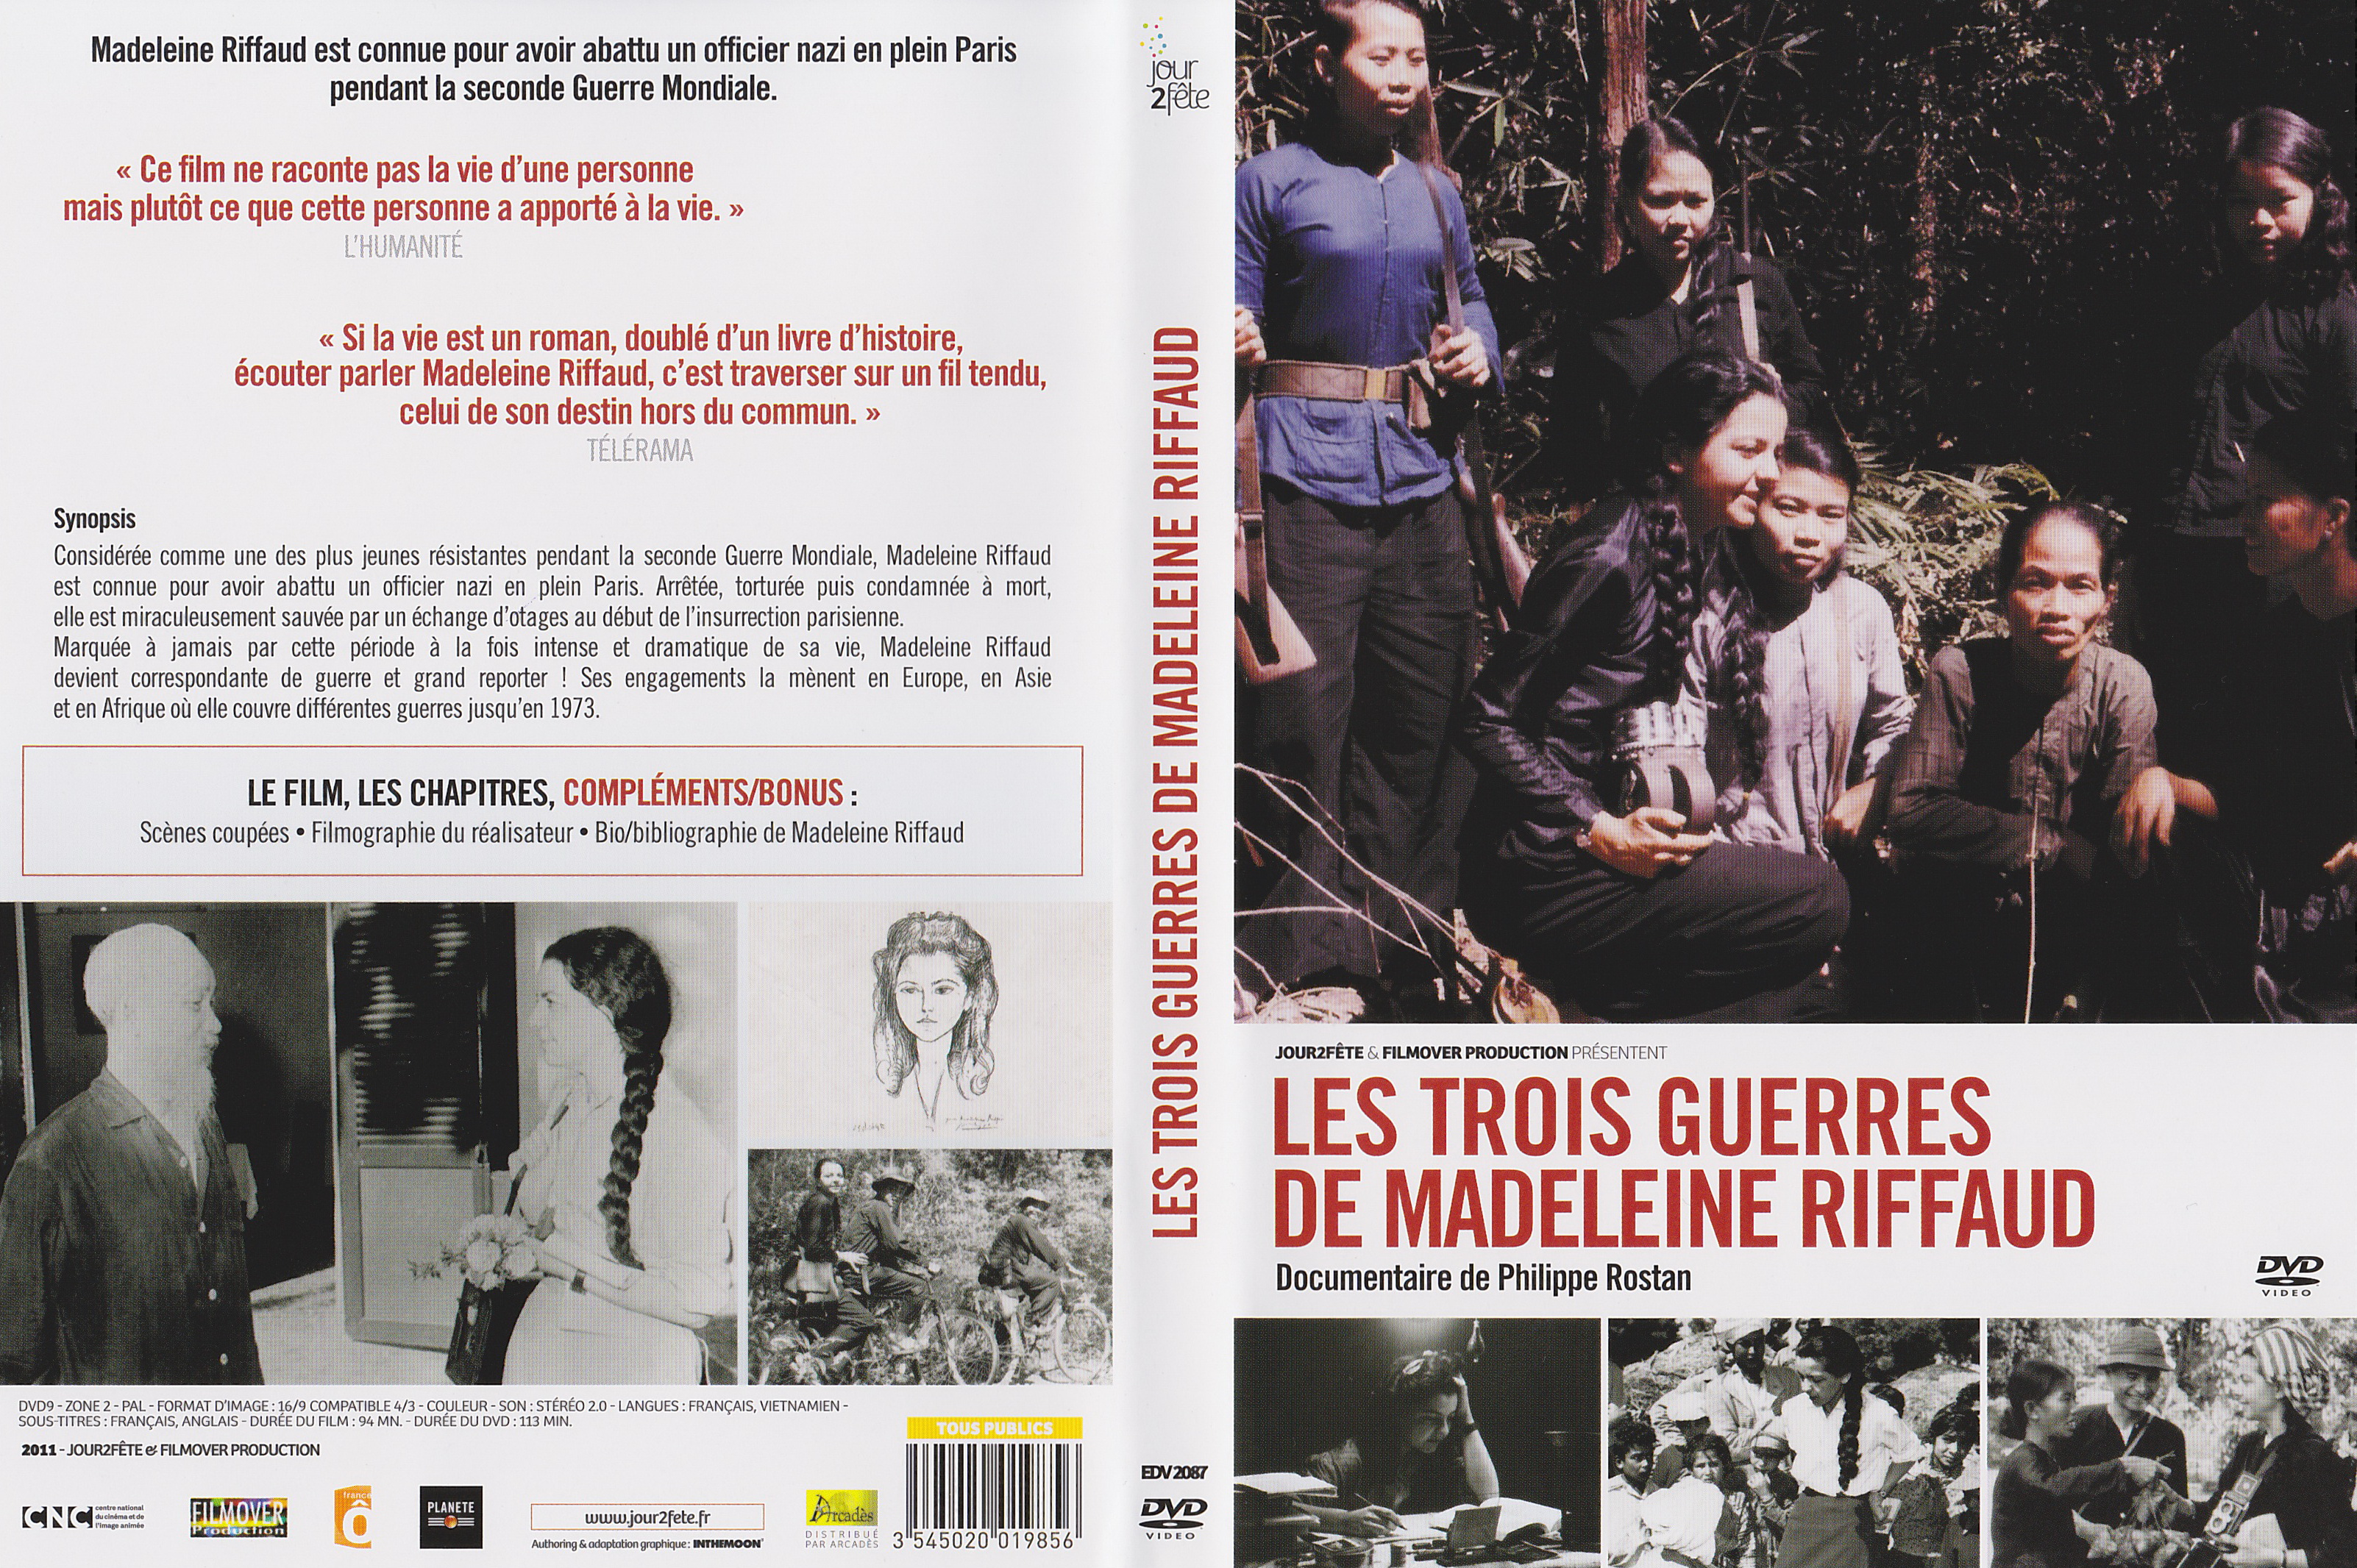 Jaquette DVD Les trois guerres de Madeleine Riffaud